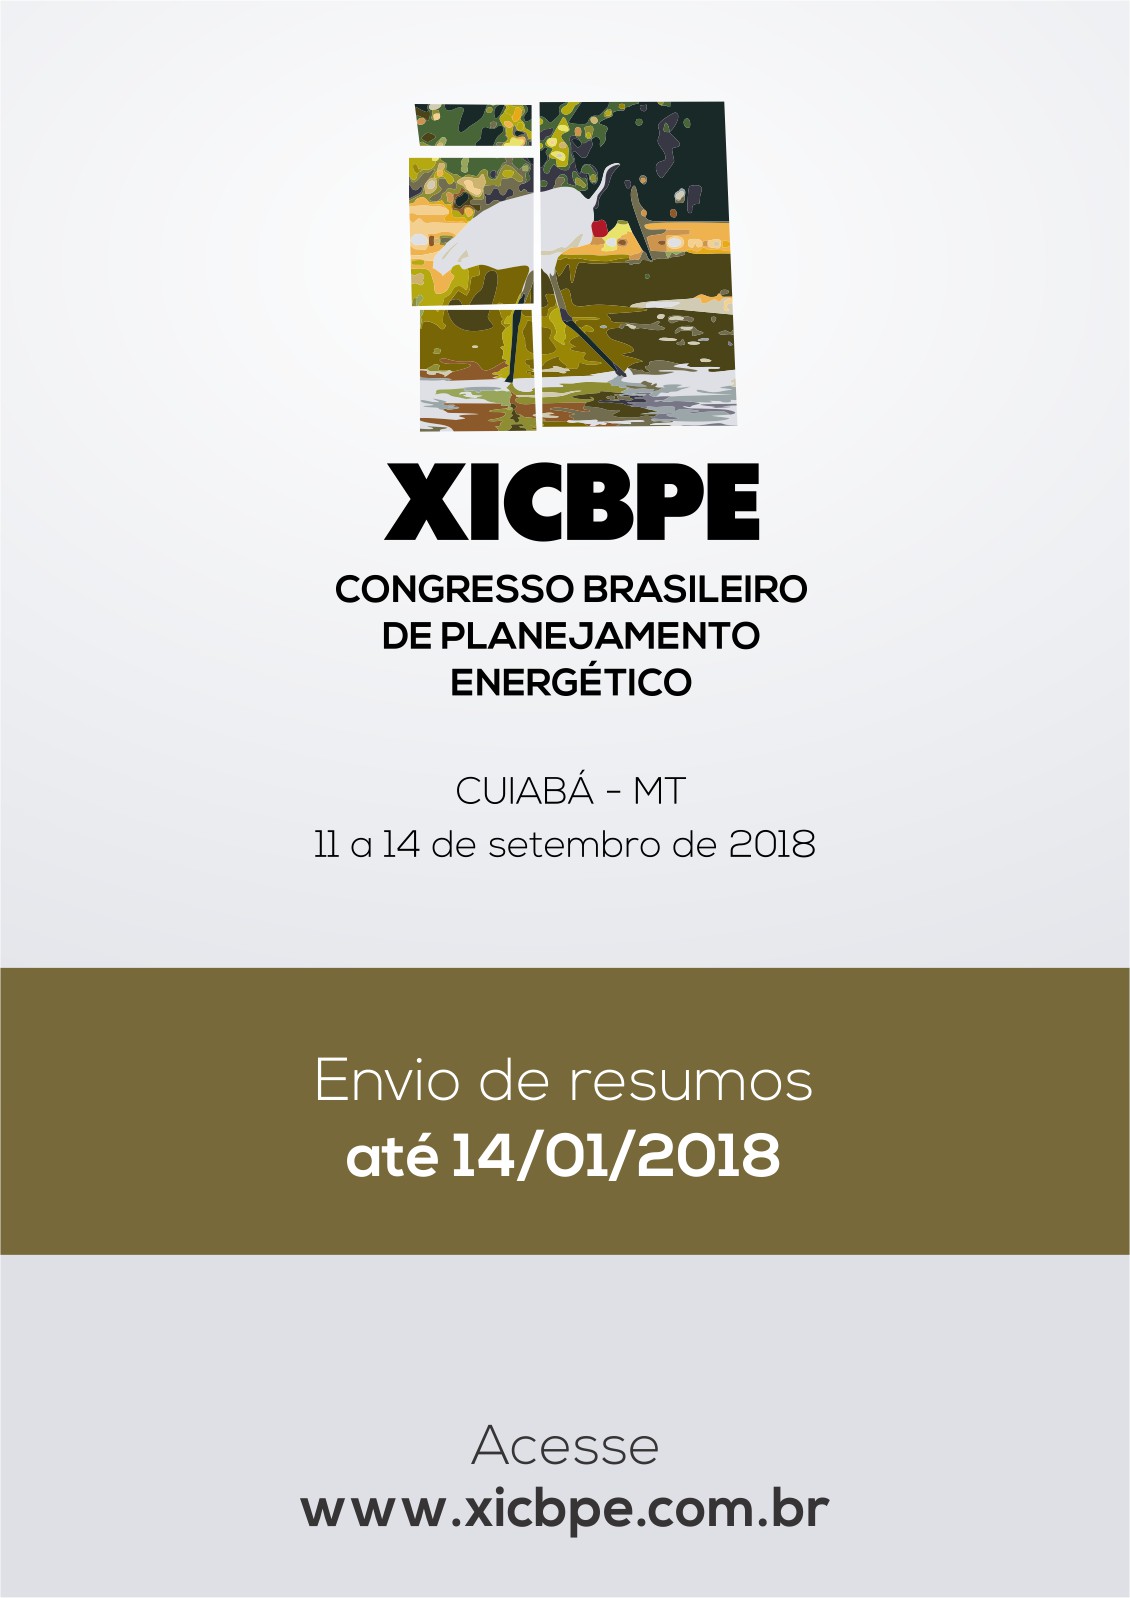 XI CBPE - Congresso Brasileiro de Planejamento Energético